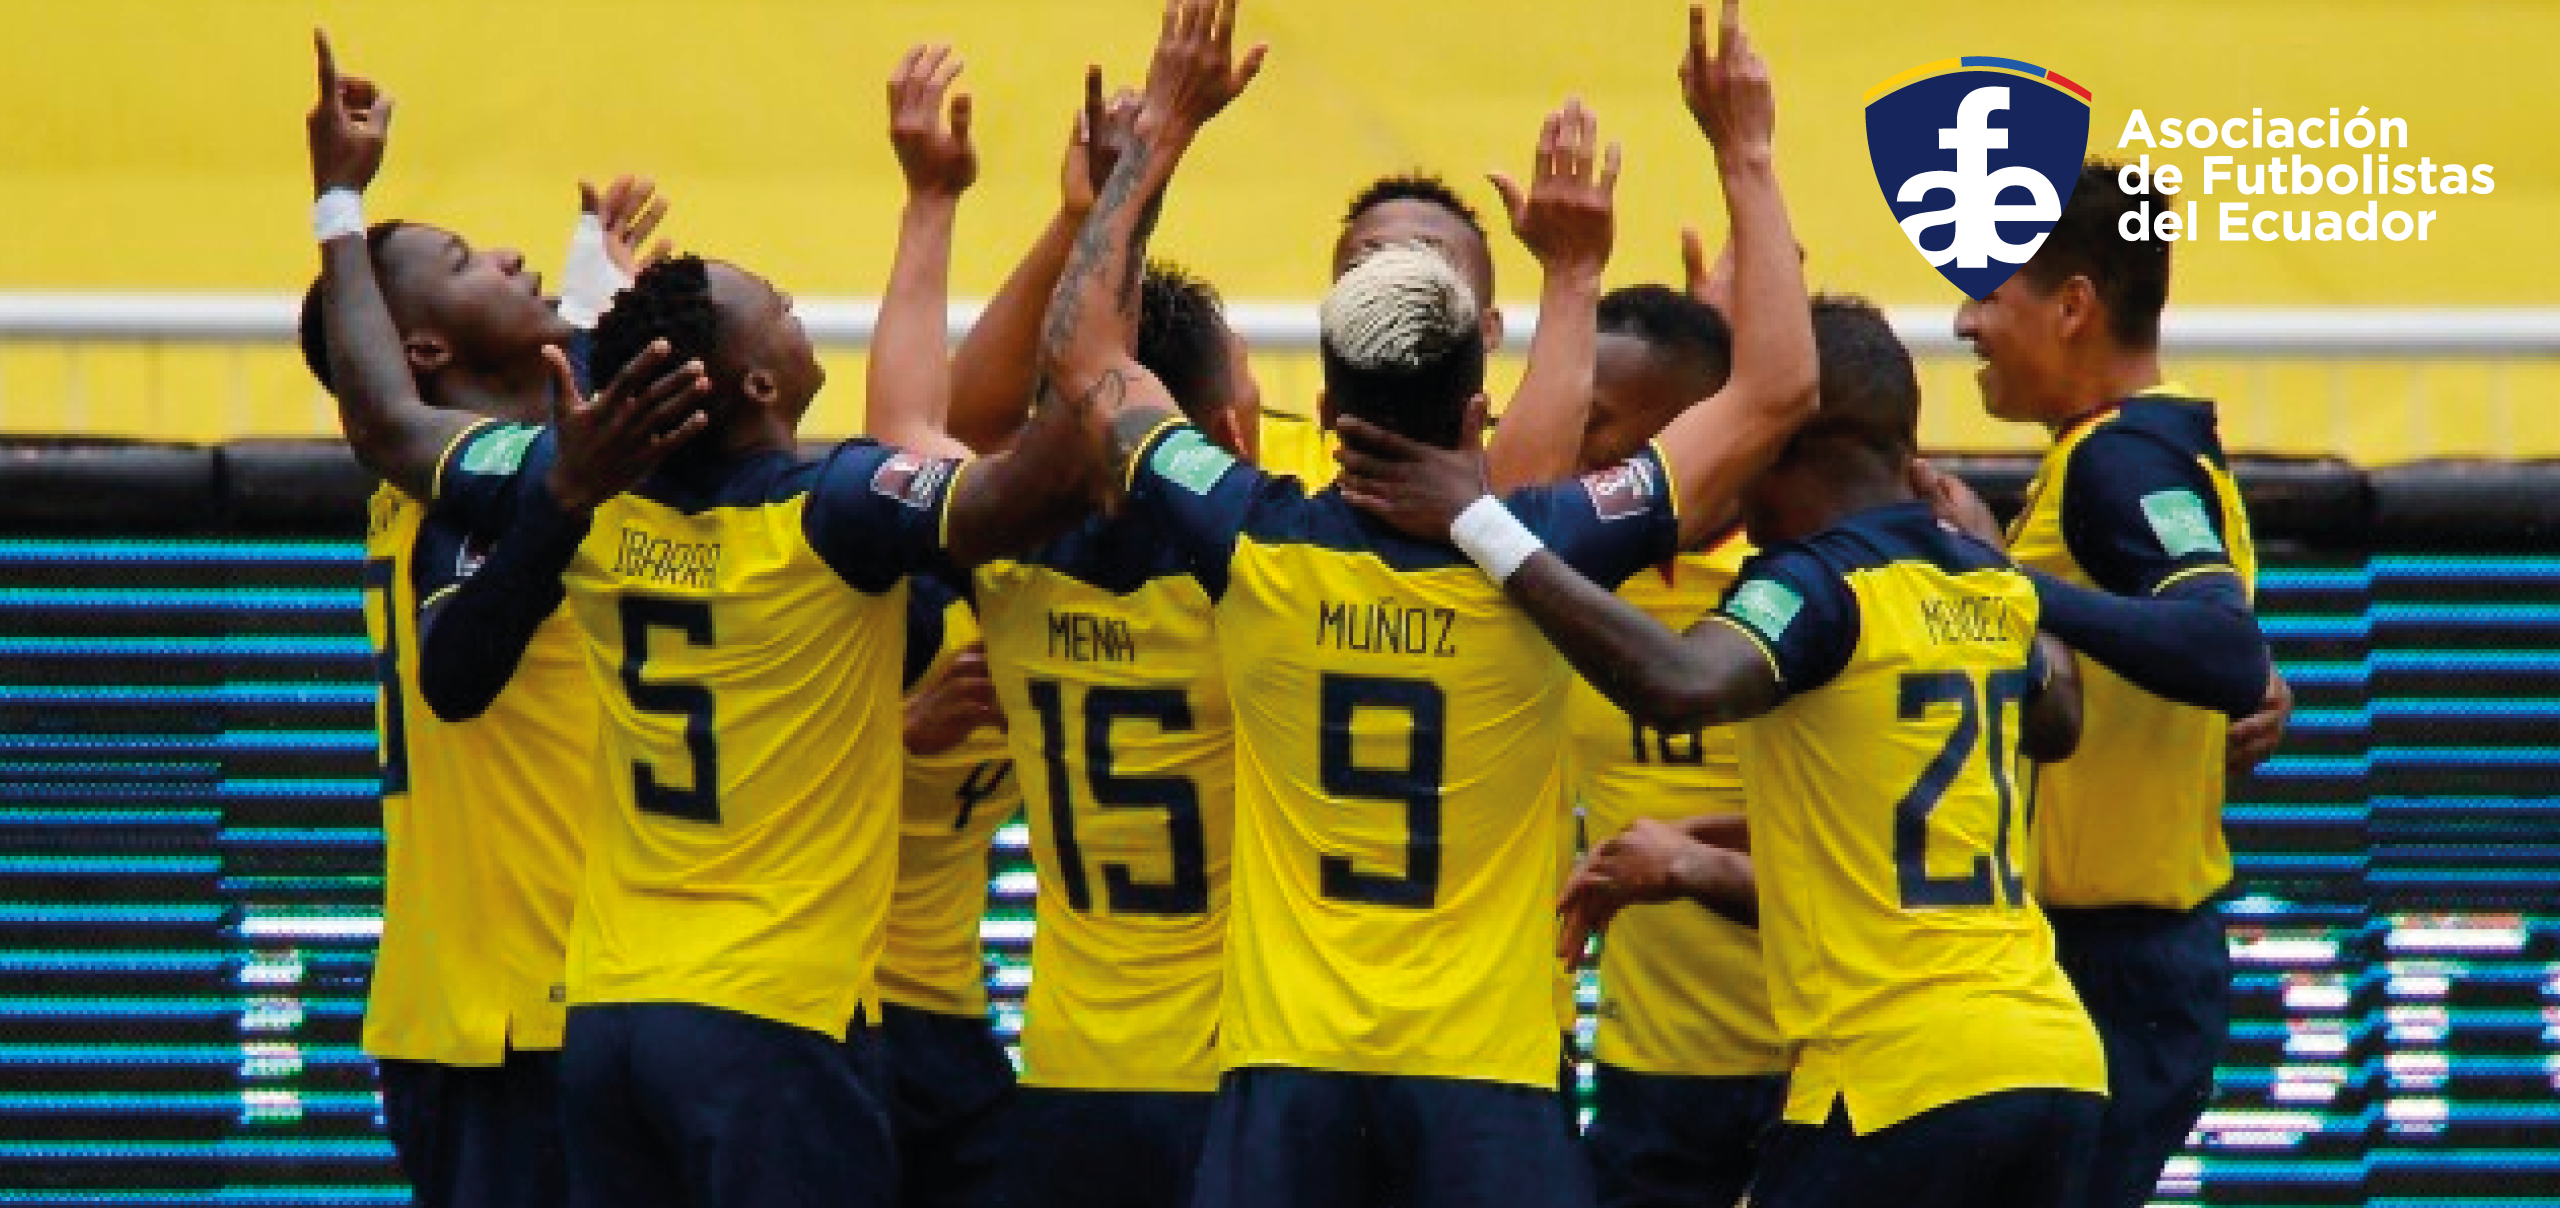 Nuevas regulaciones de la FIFA refuerzan la protección de los derechos de los futbolistas ecuatorianos